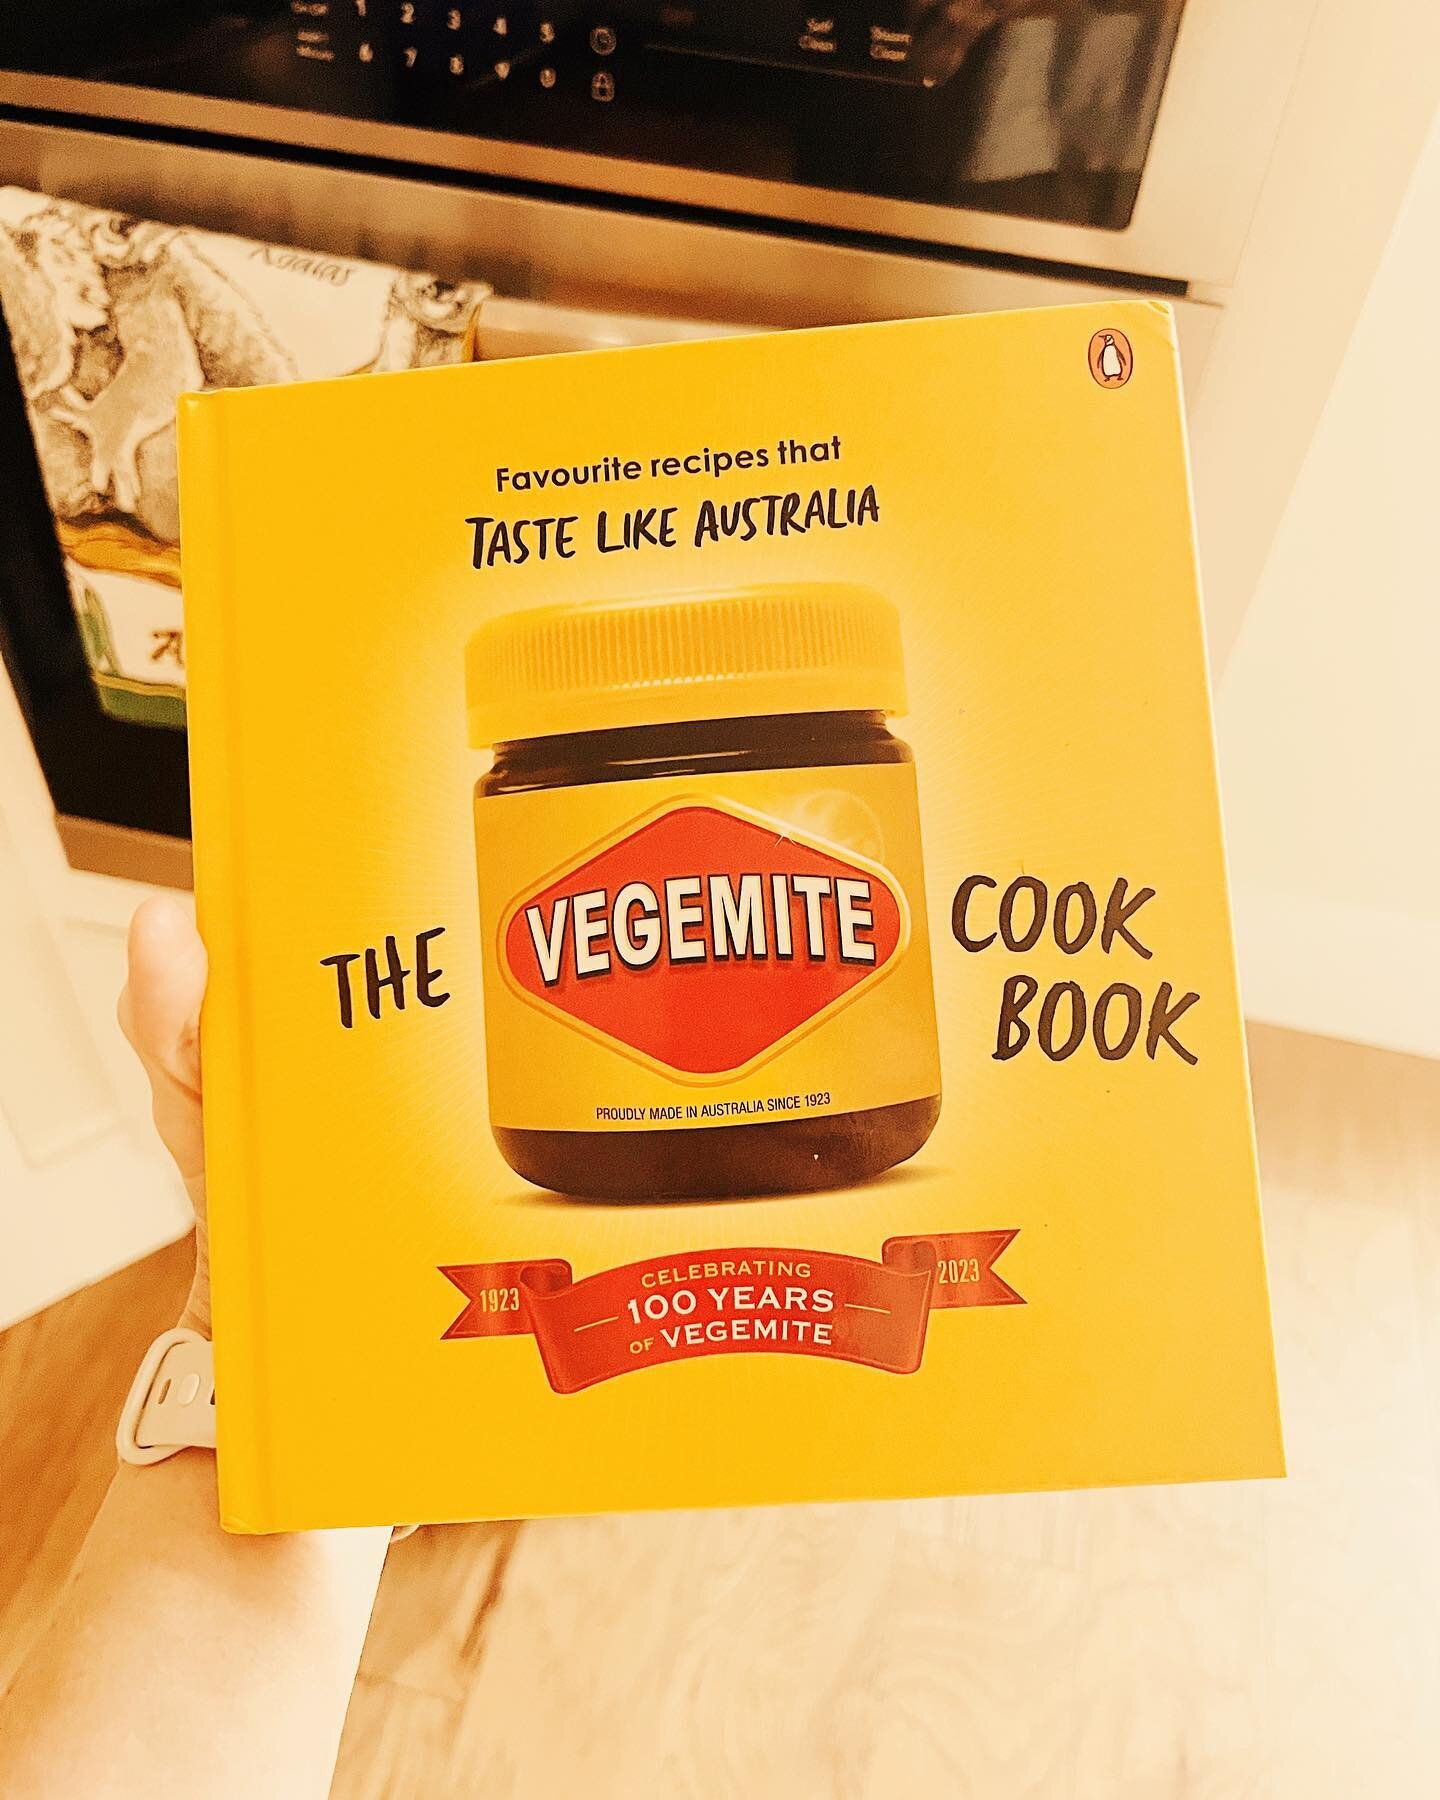 I have gone and bought a Vegemite cookbook. Assimilation has begun. And I shall make them all in plant-based versions.
#vegemite #vegemitespaghetti #vegemiteallthethings #australianfood #australiagram